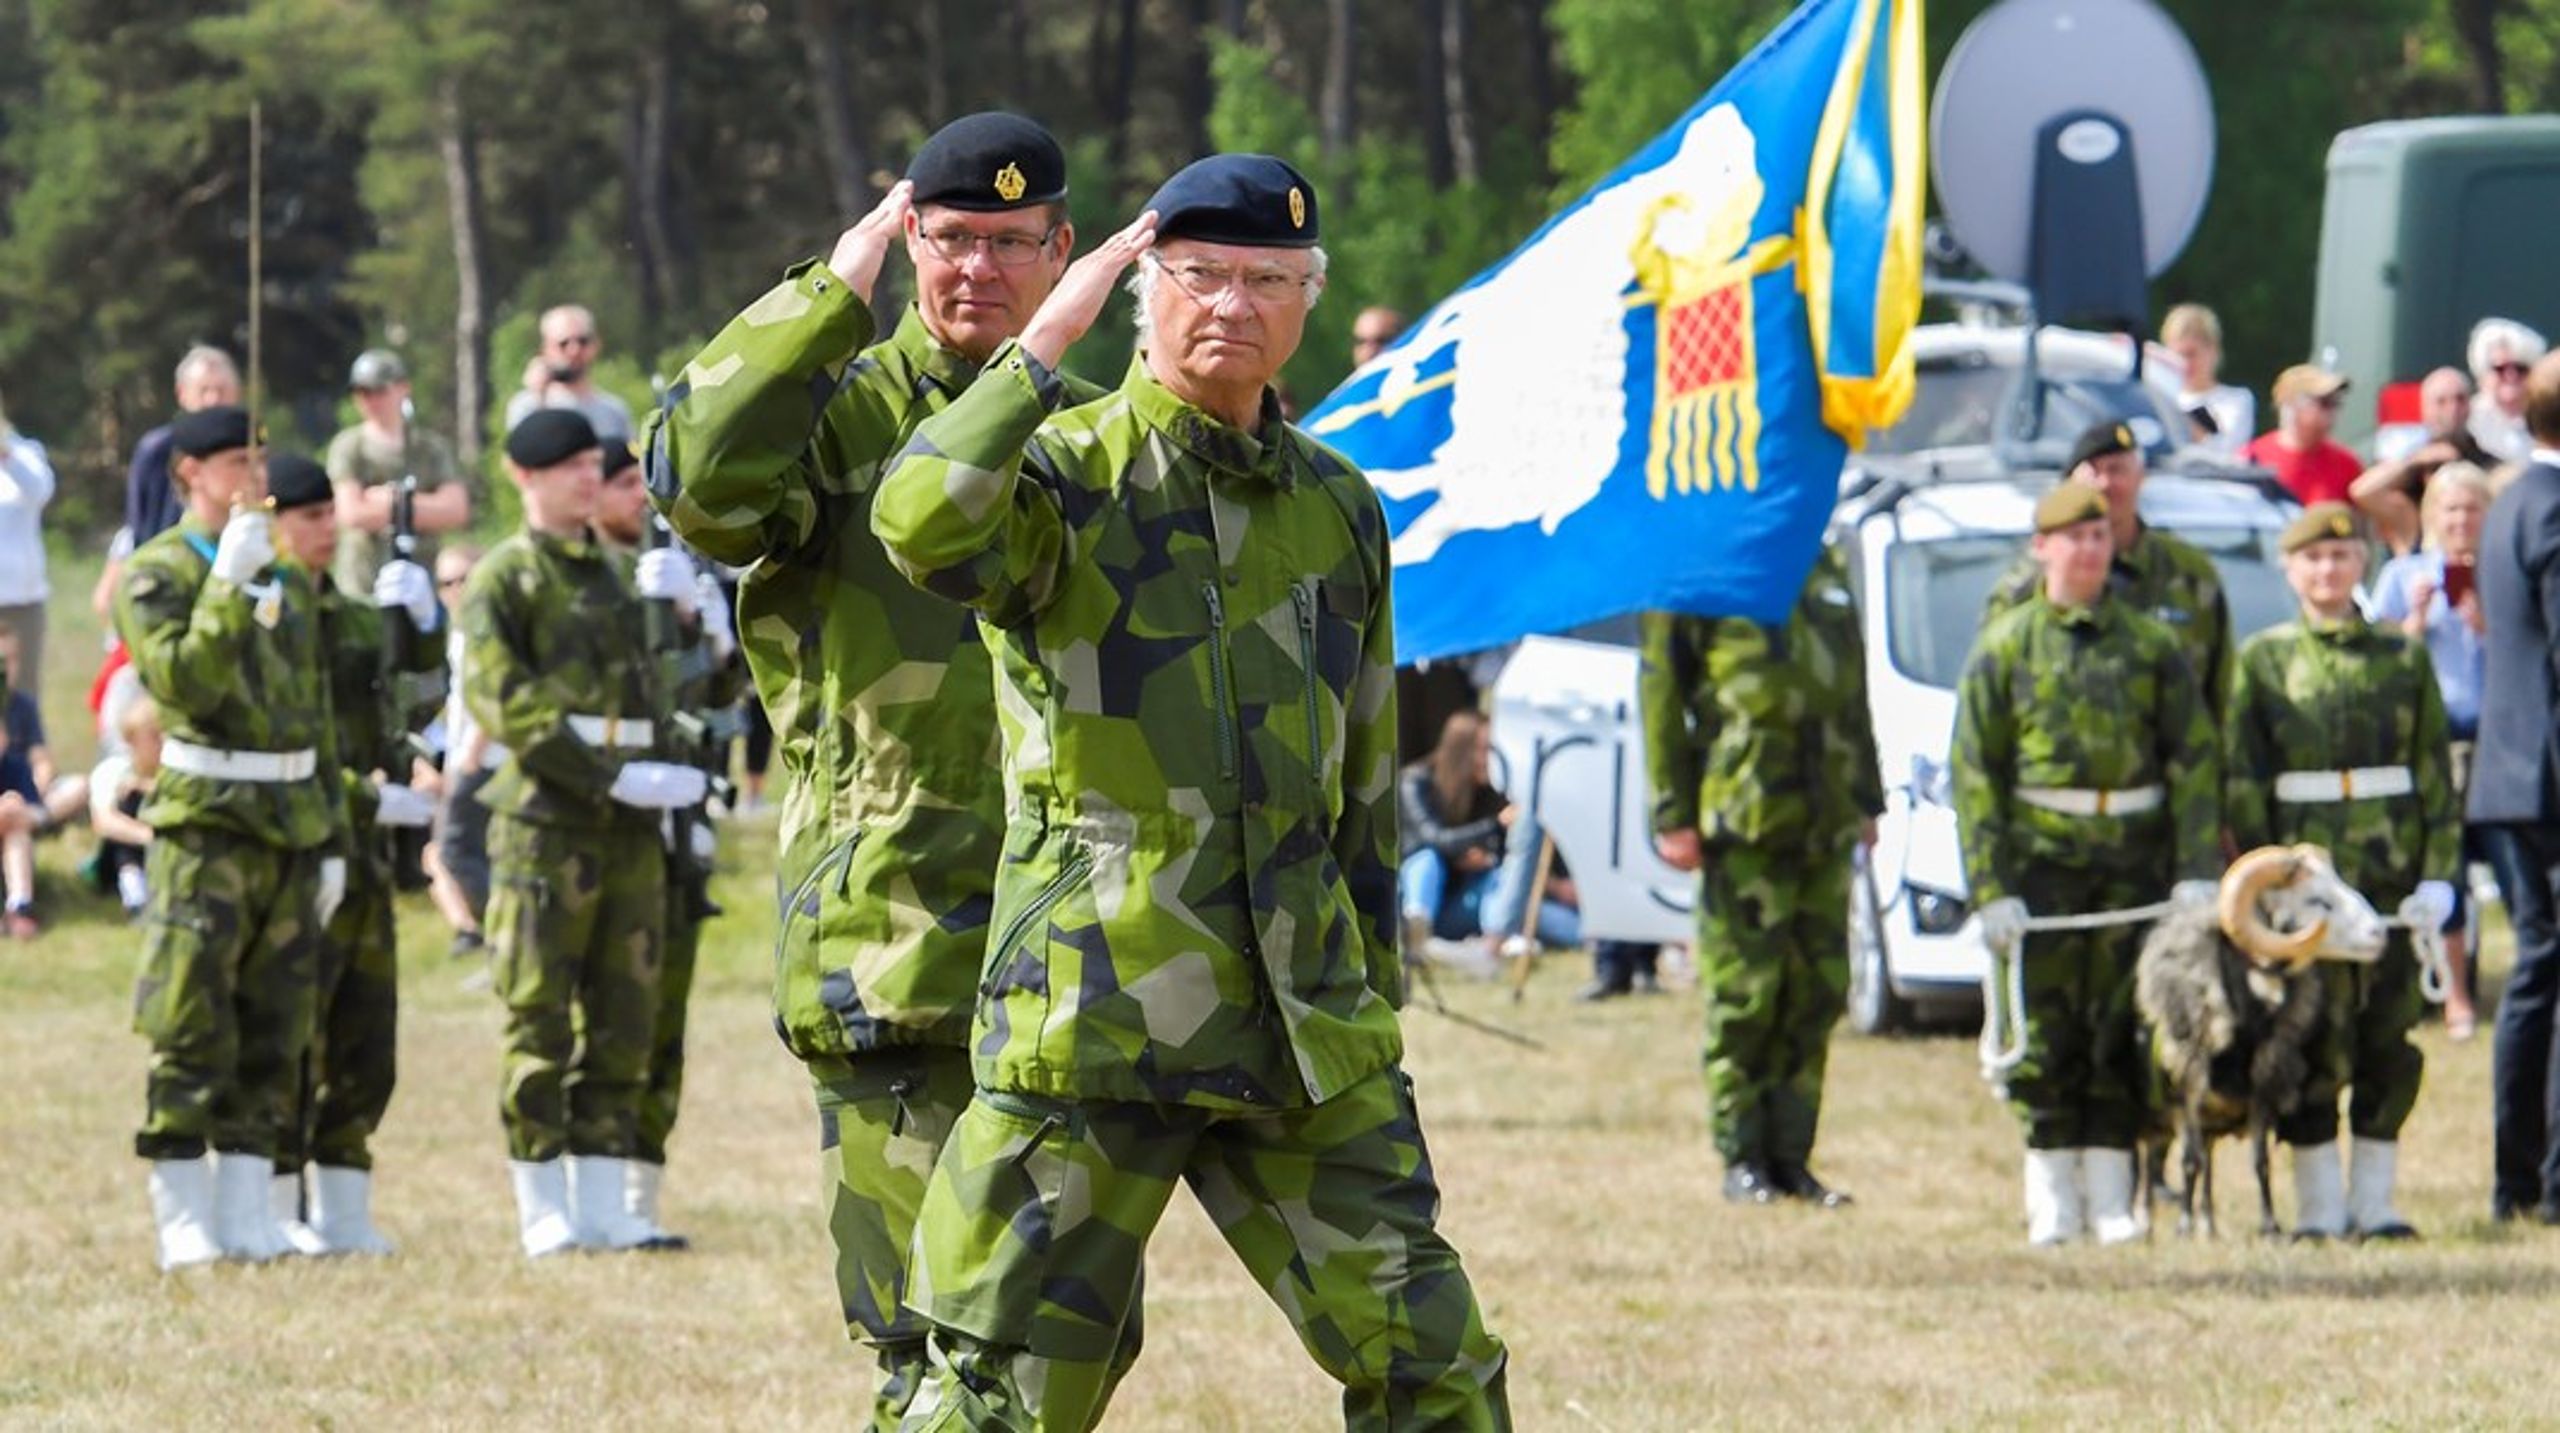 Kunglig glans. År 2018 återupprättades Gotlands regemente P18.